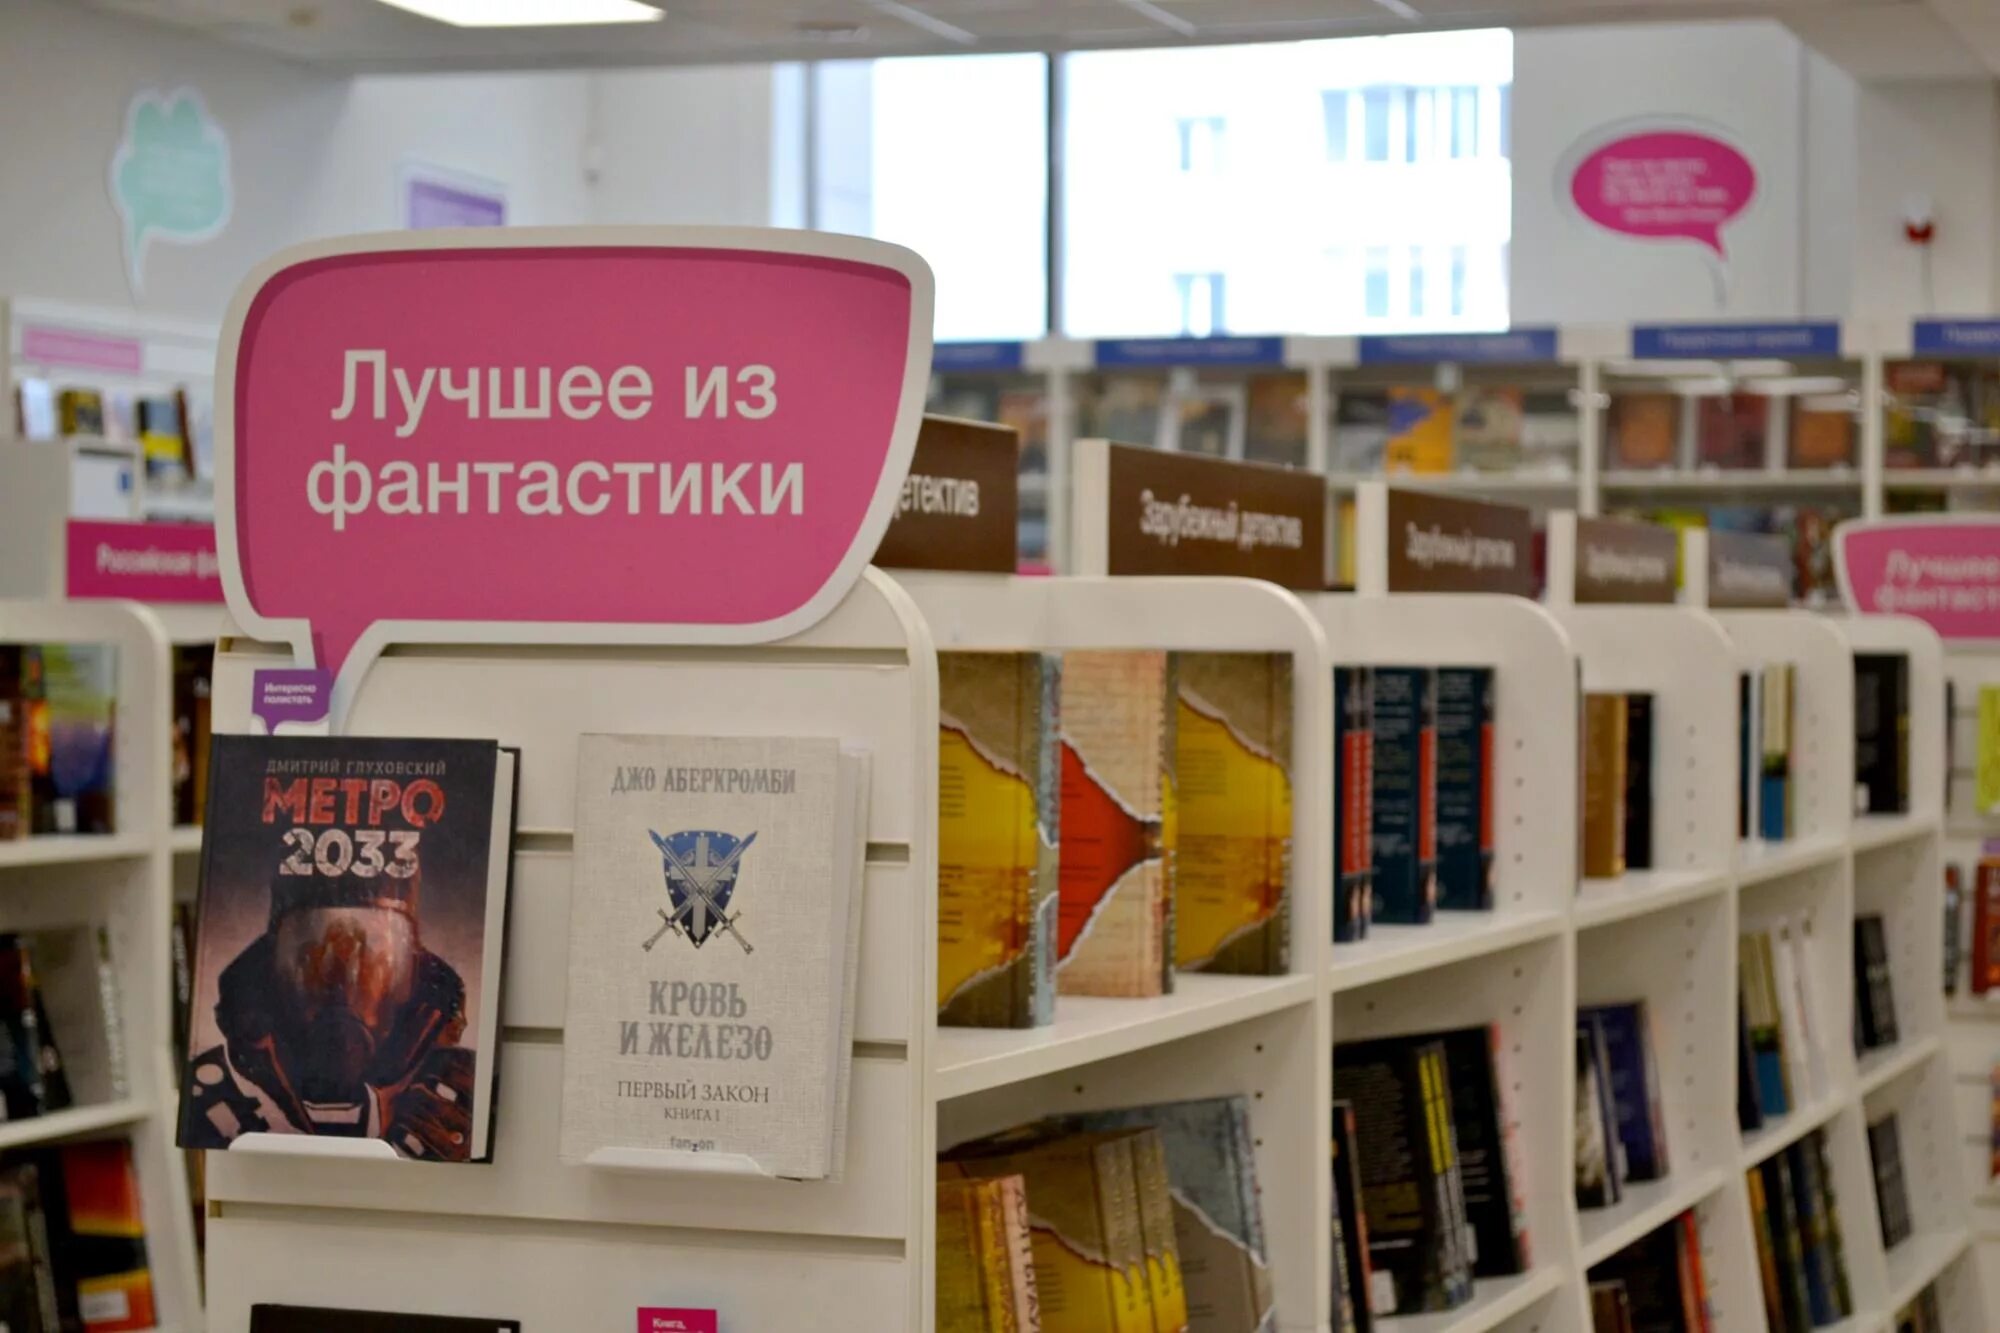 Реклама книги в книжном магазине. Указатели в книжном магазине. Указатели в библиотеке. Реклама книжного магазина.